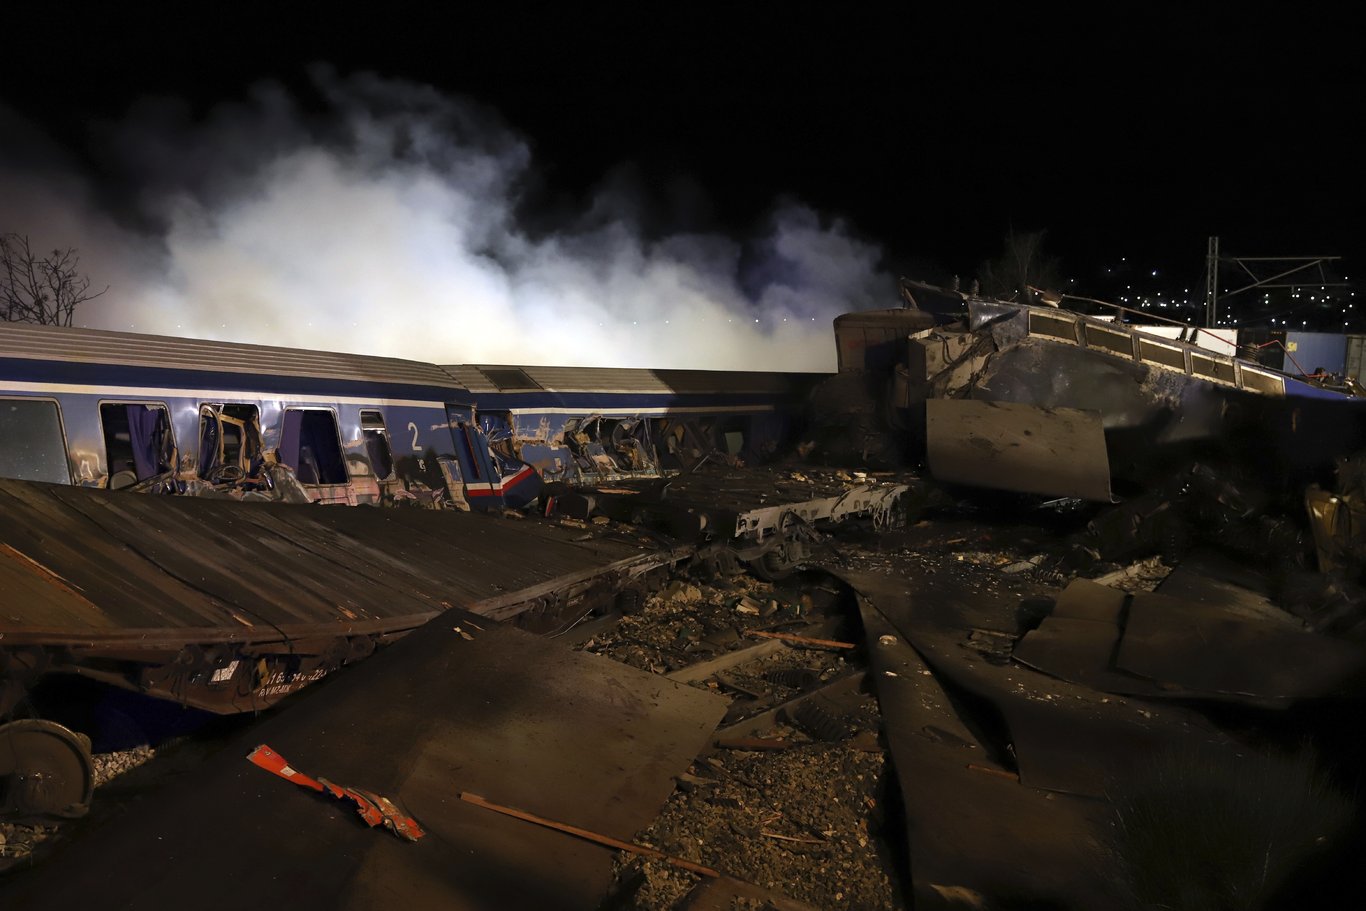 Yunanistan'daki ölümcül tren kazasında can kaybı artıyor: Atina ve Selanik sokakları karıştı! - Son dakika dünya haberleri